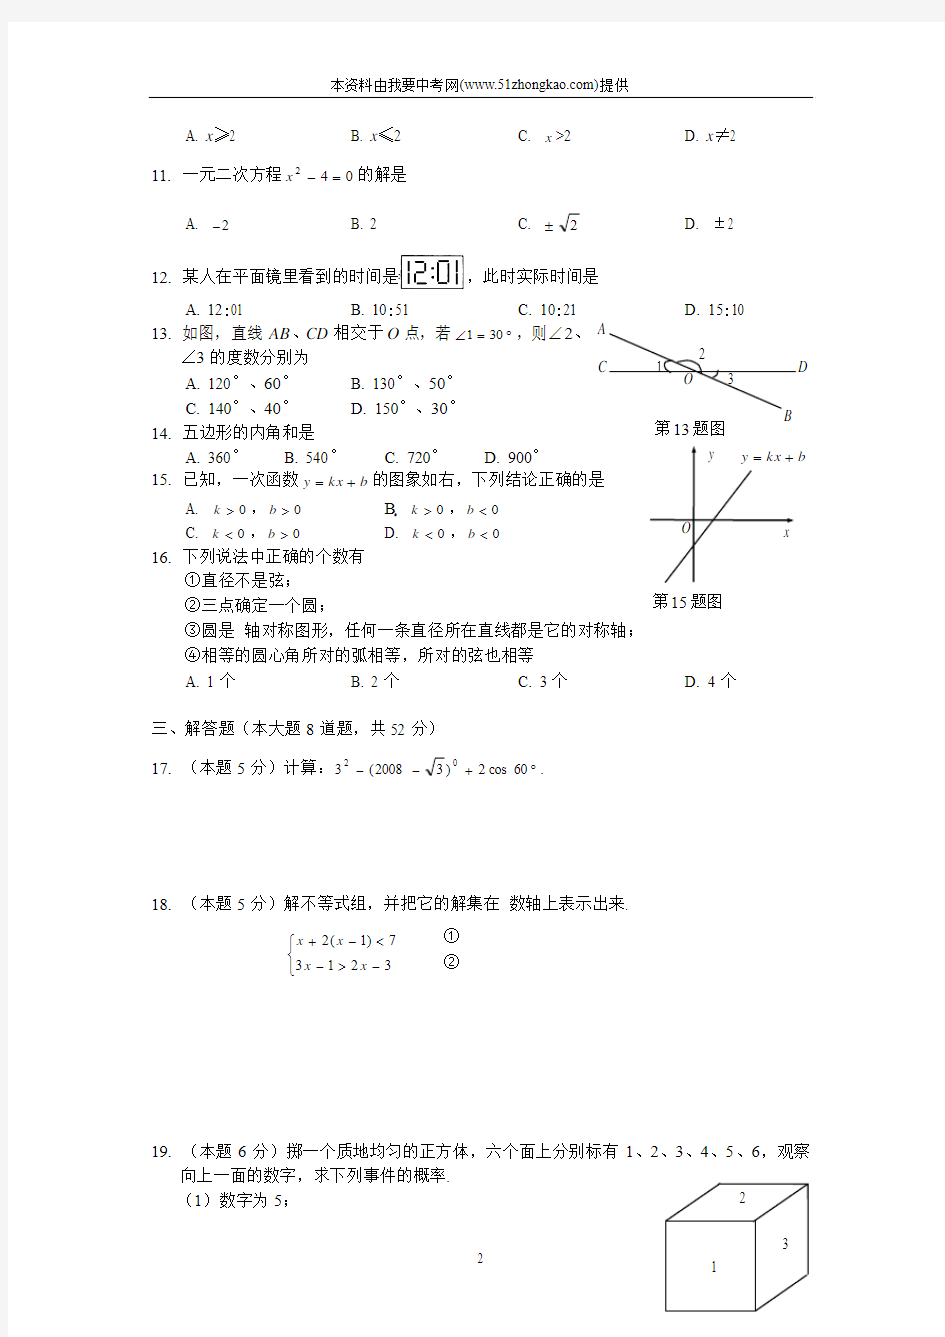 2008年湖南省湘西自治州中考数学试卷附参考答案及评分标准